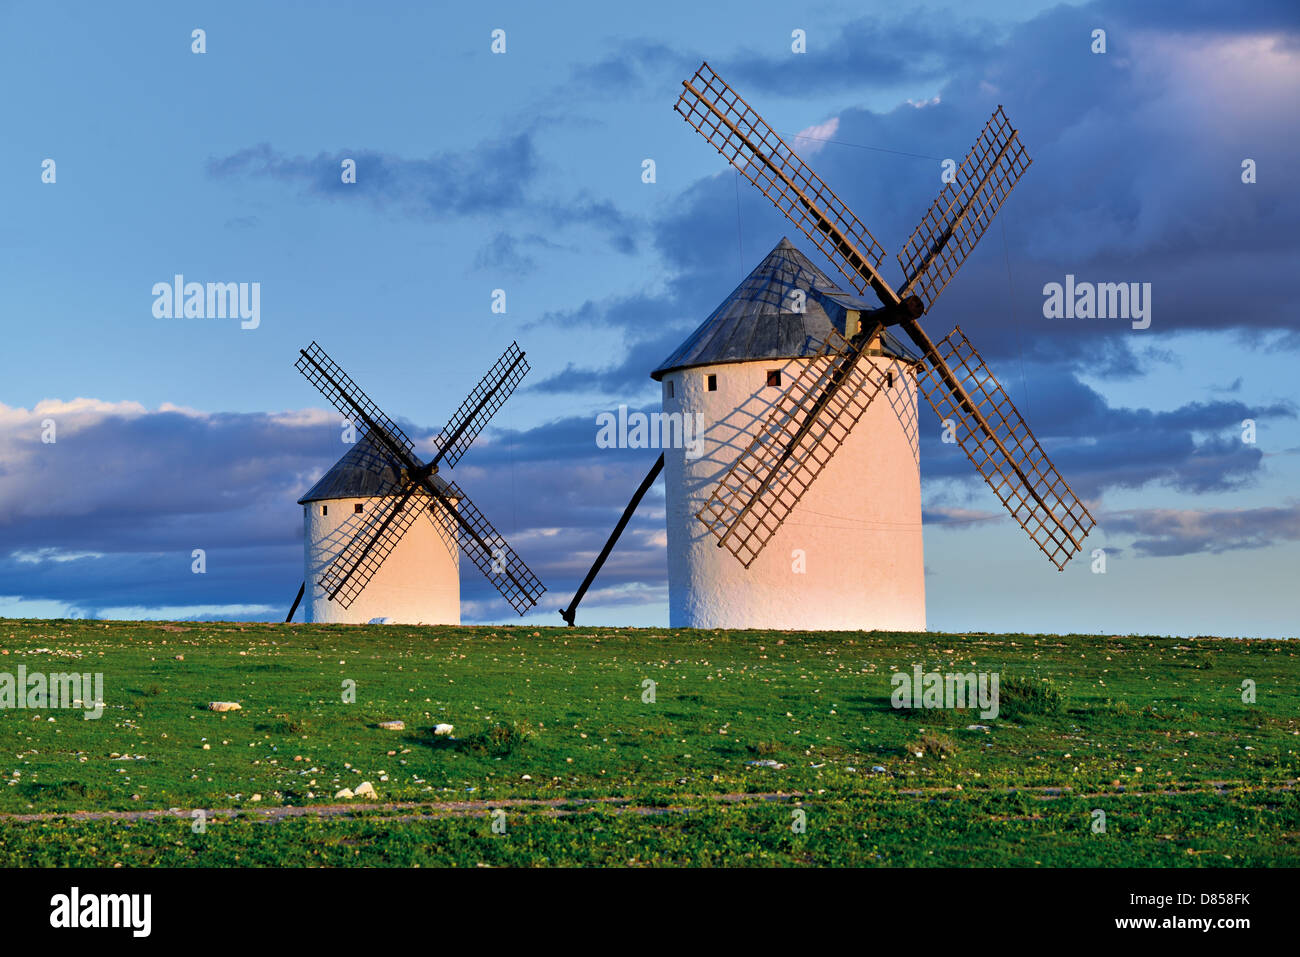 Spain, Castilla-La Mancha: Scenic view of two windmills of Campo de Criptana Stock Photo